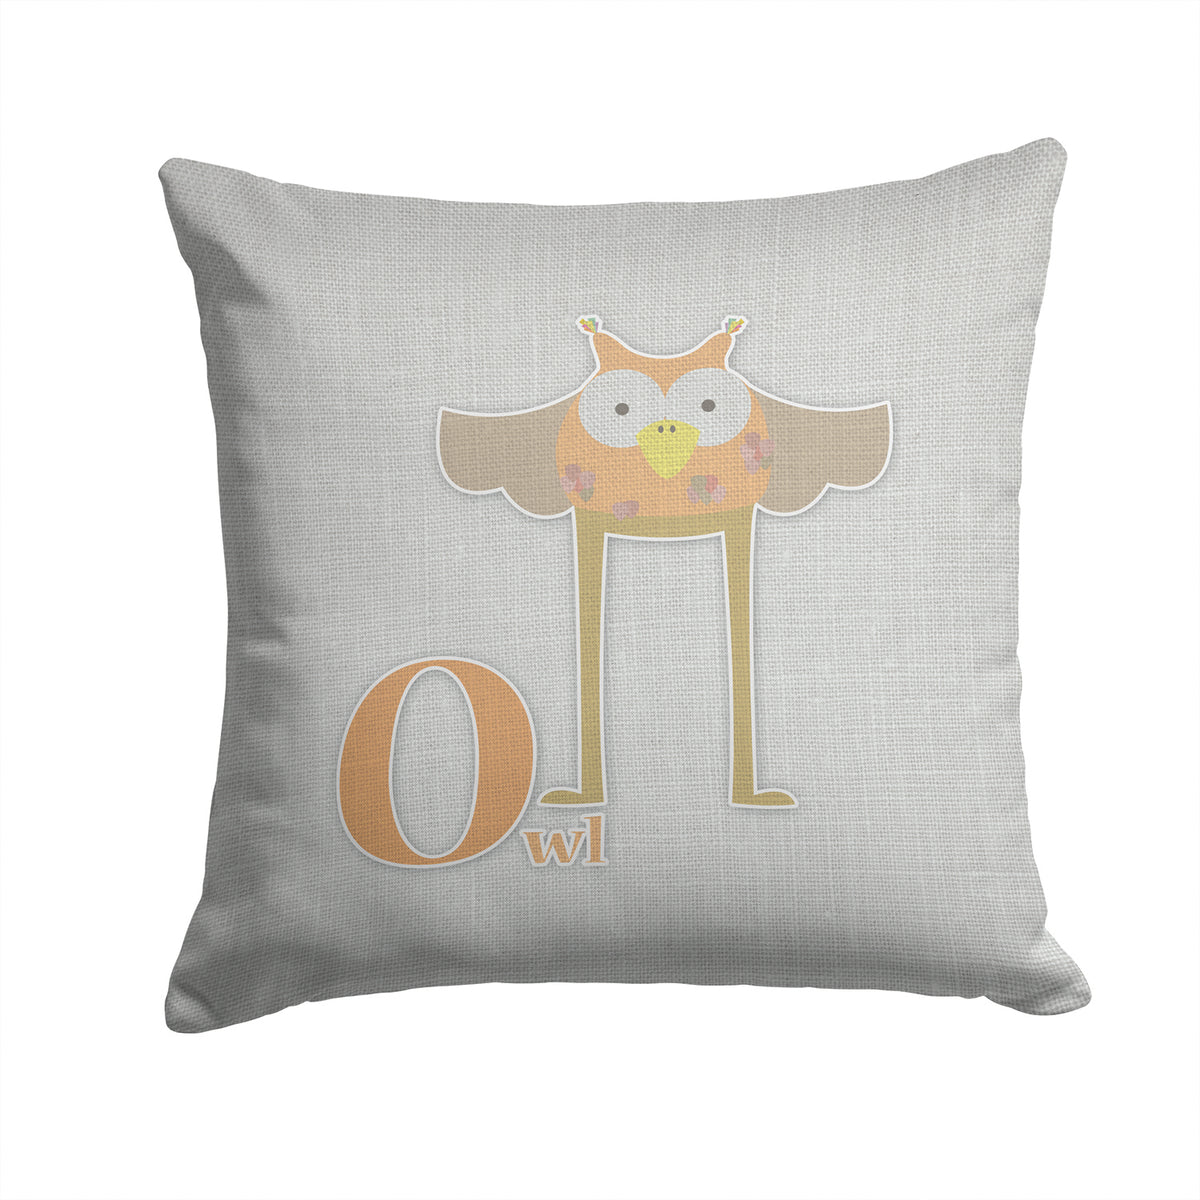 Alphabet O for Owl Fabric Decorative Pillow BB5740PW1414 - the-store.com